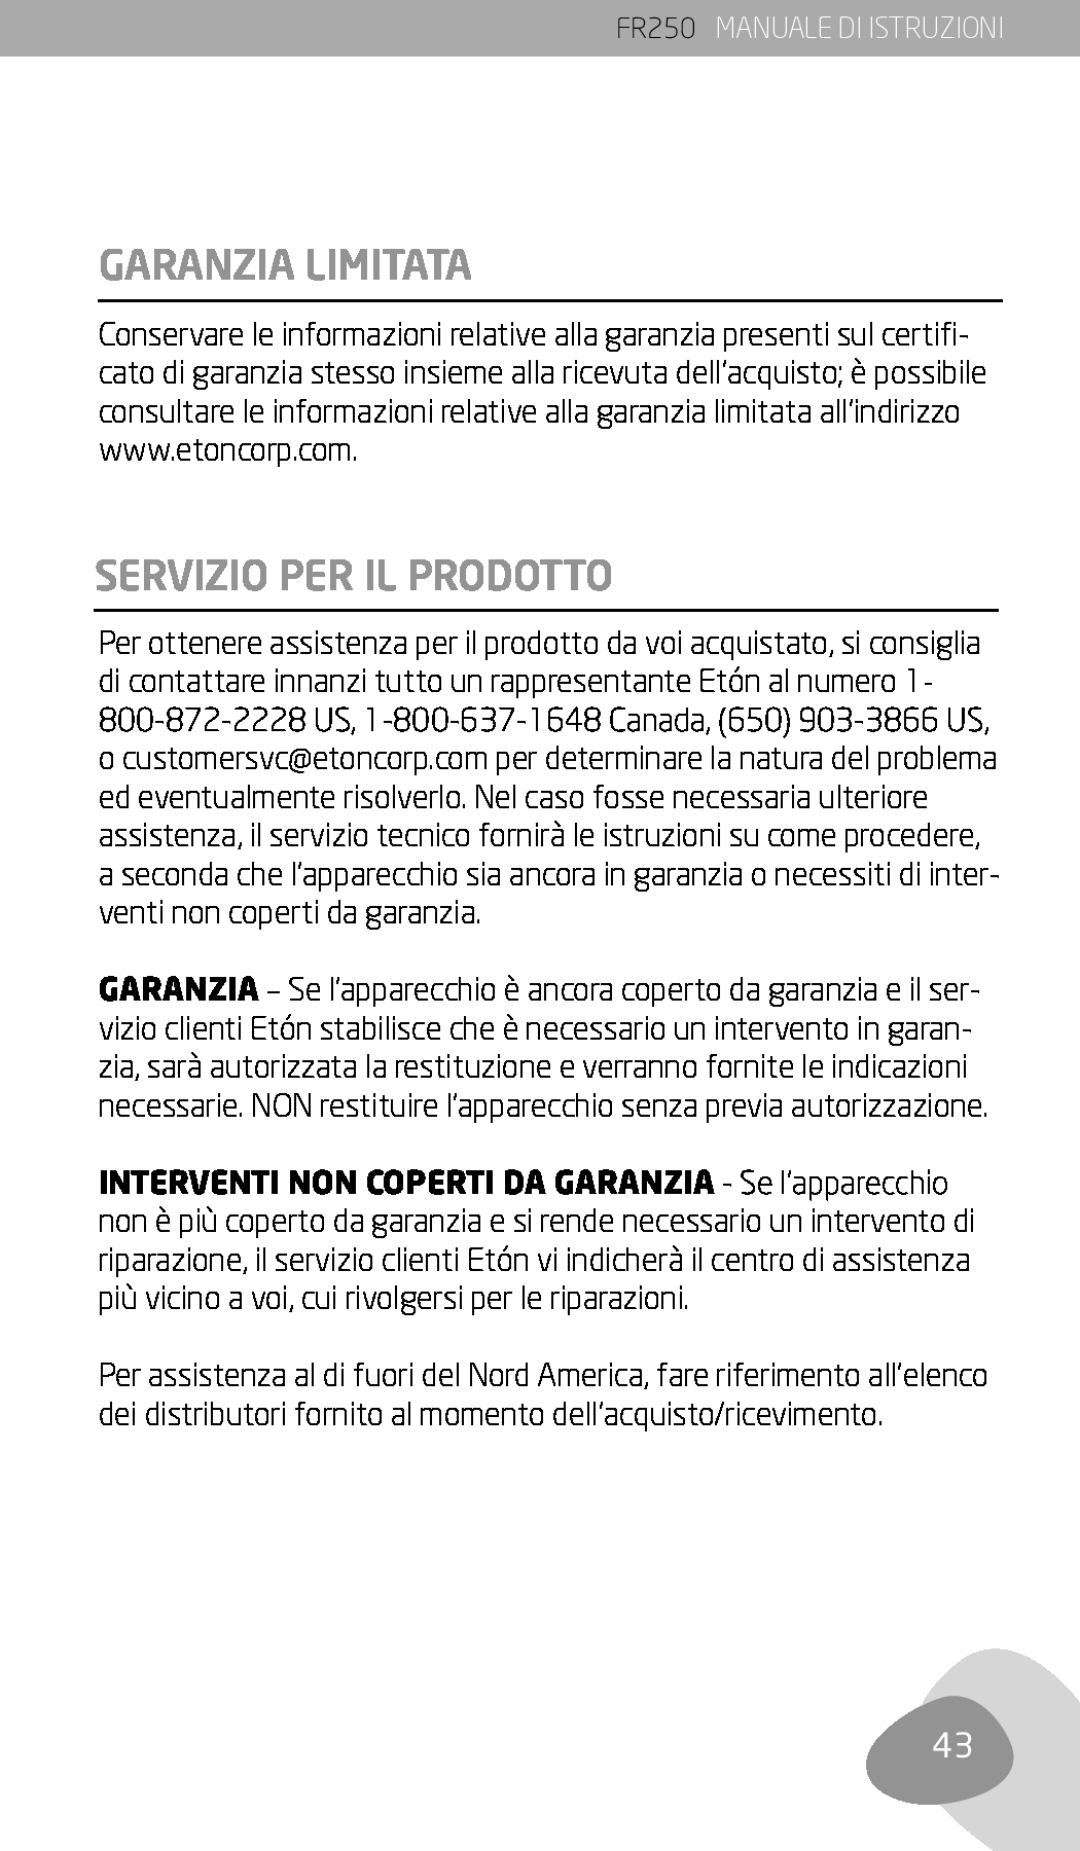 Eton owner manual Garanzia Limitata, Servizio Per Il Prodotto, FR250 MANUALE DI ISTRUZIONI 